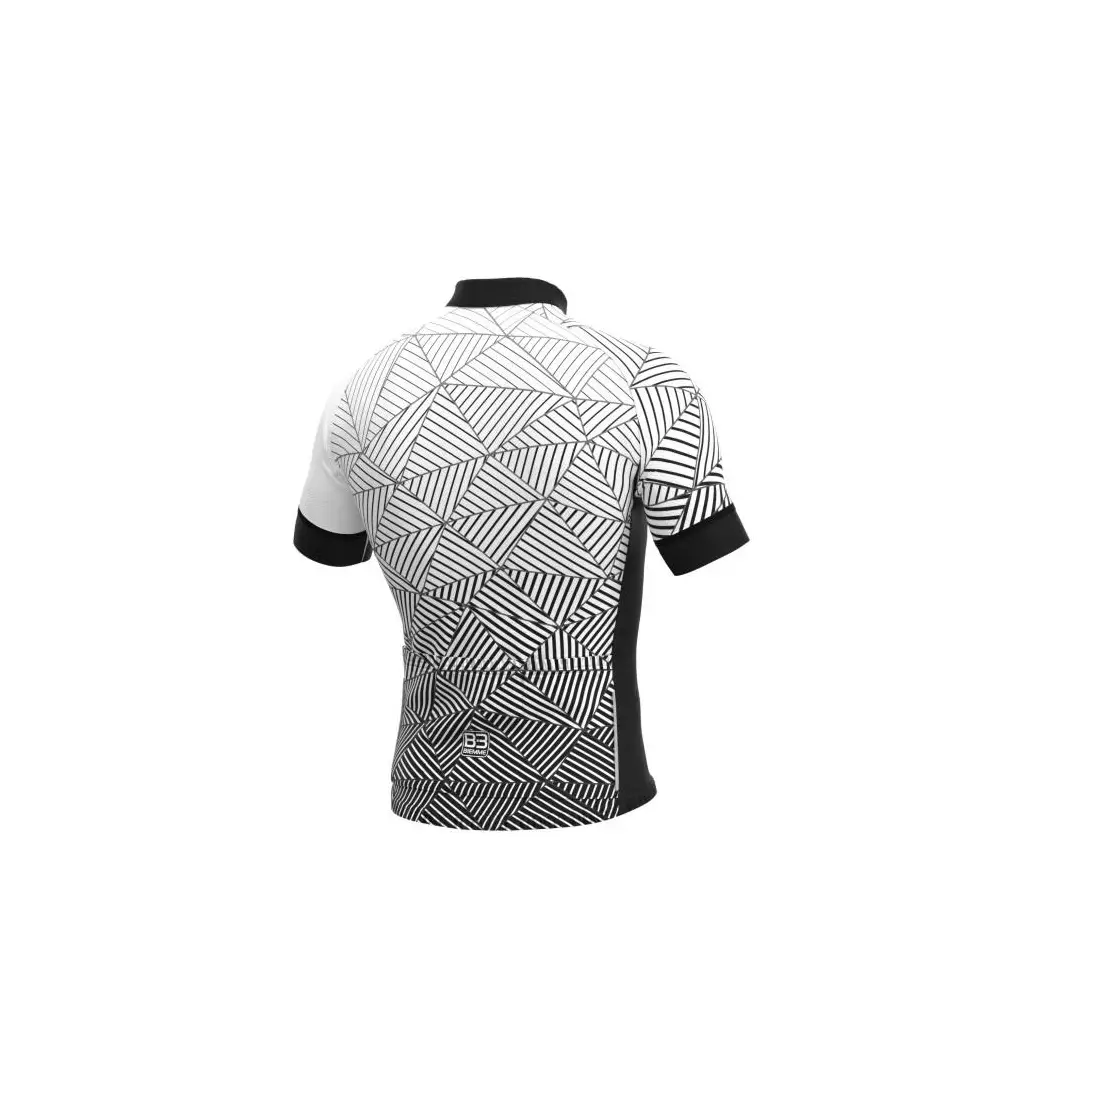 BIEMME pánsky cyklistický dres ANGLIRU black white